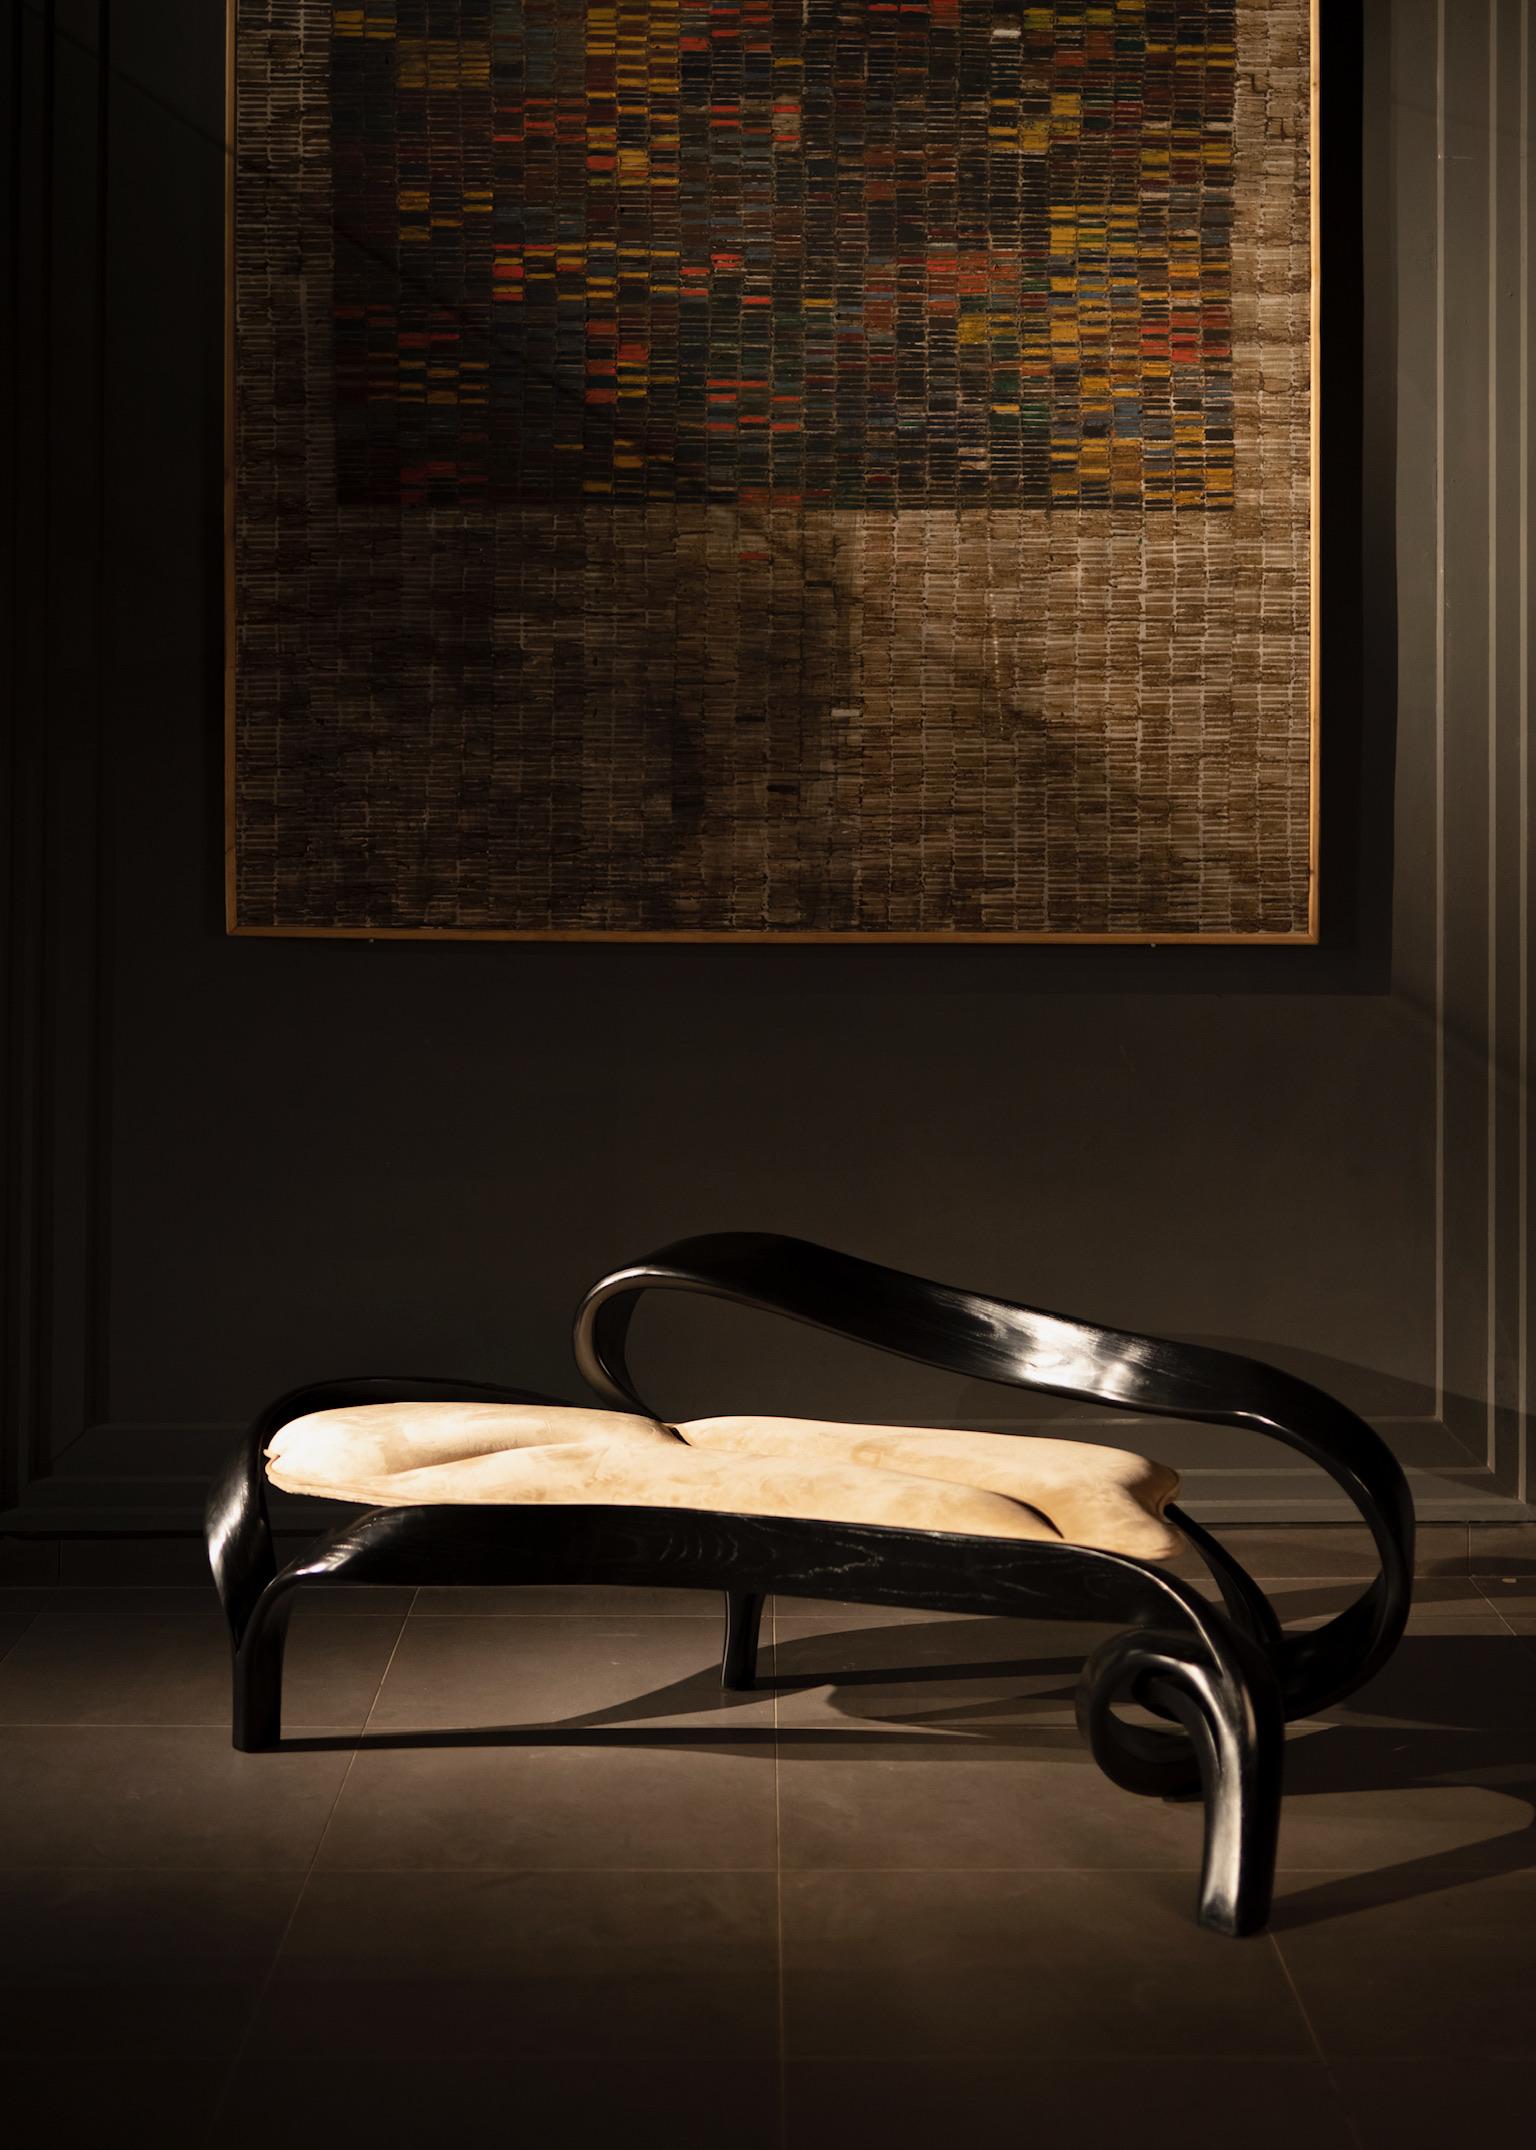 Le Two Seater No. 2, un châssis conçu par Raka Studio à l'aide d'une ancienne technique japonaise de cintrage du bois. Le design s'inspire des flux organiques de la Nature et des formes naturelles que l'on retrouve dans un paysage naturel. Chaque